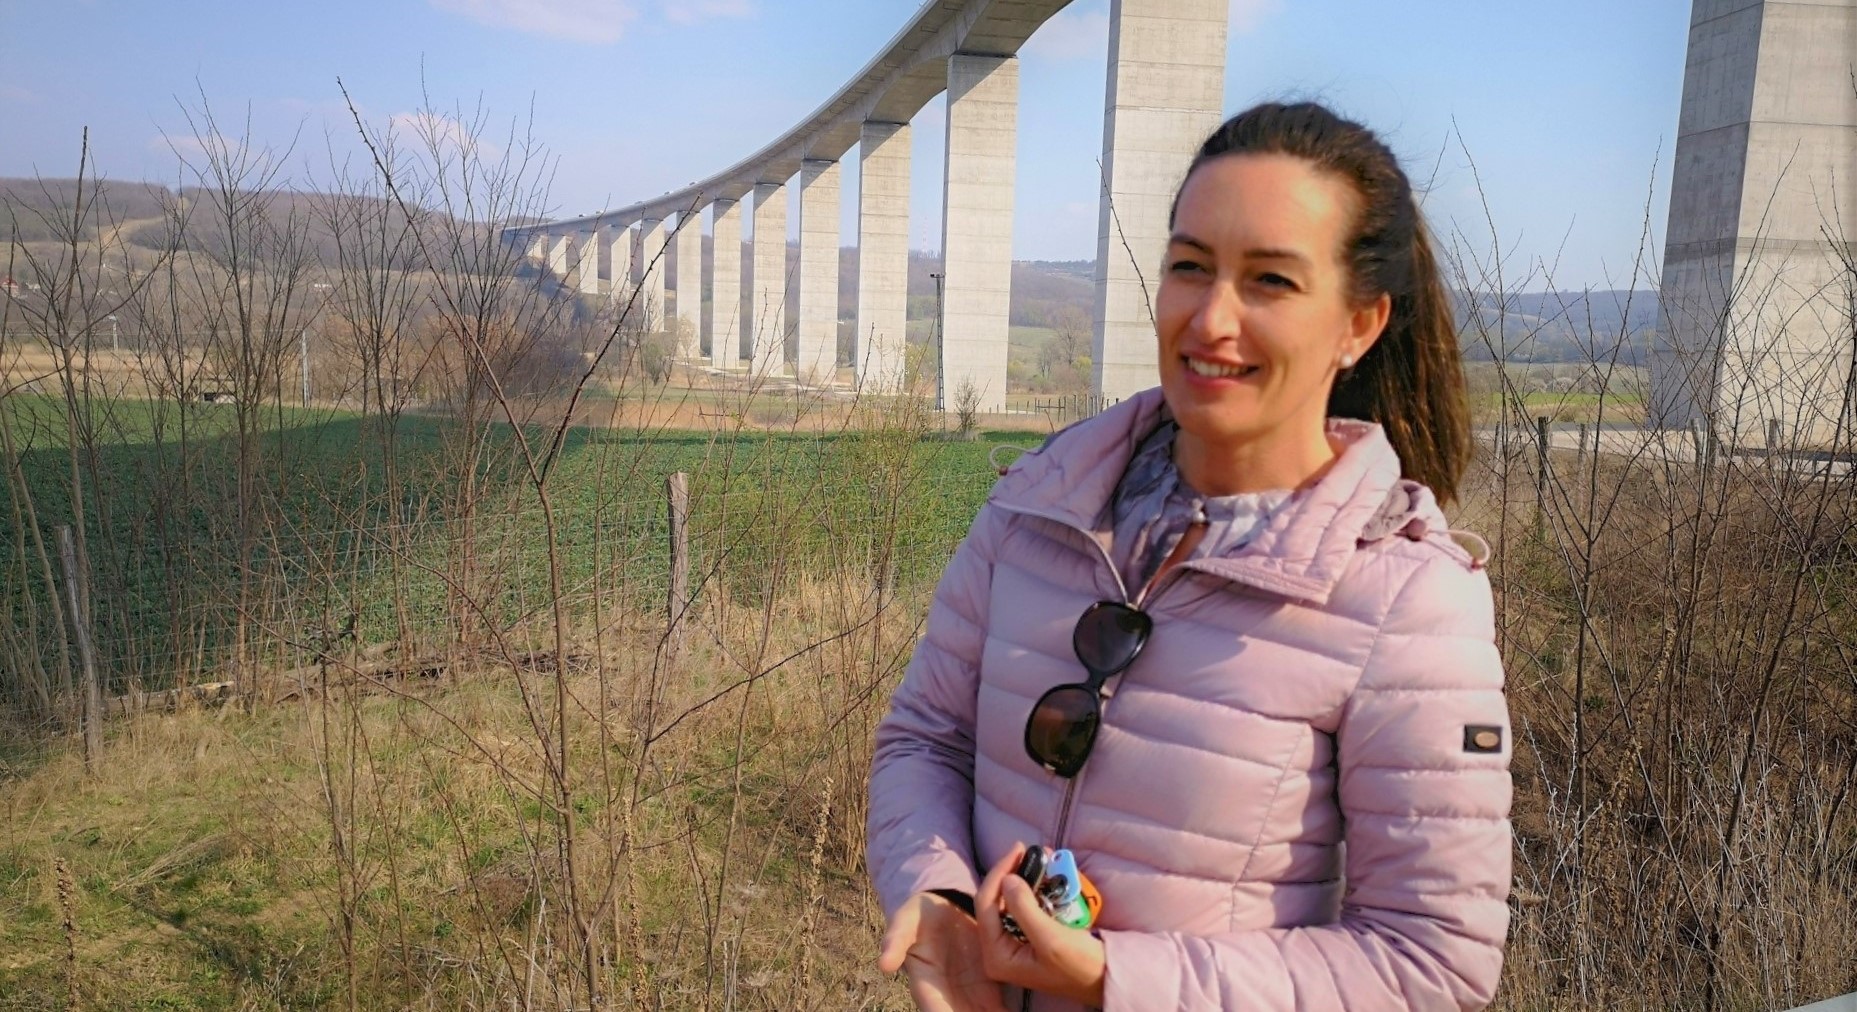 39 éves bombanő a viadukt hídmestere